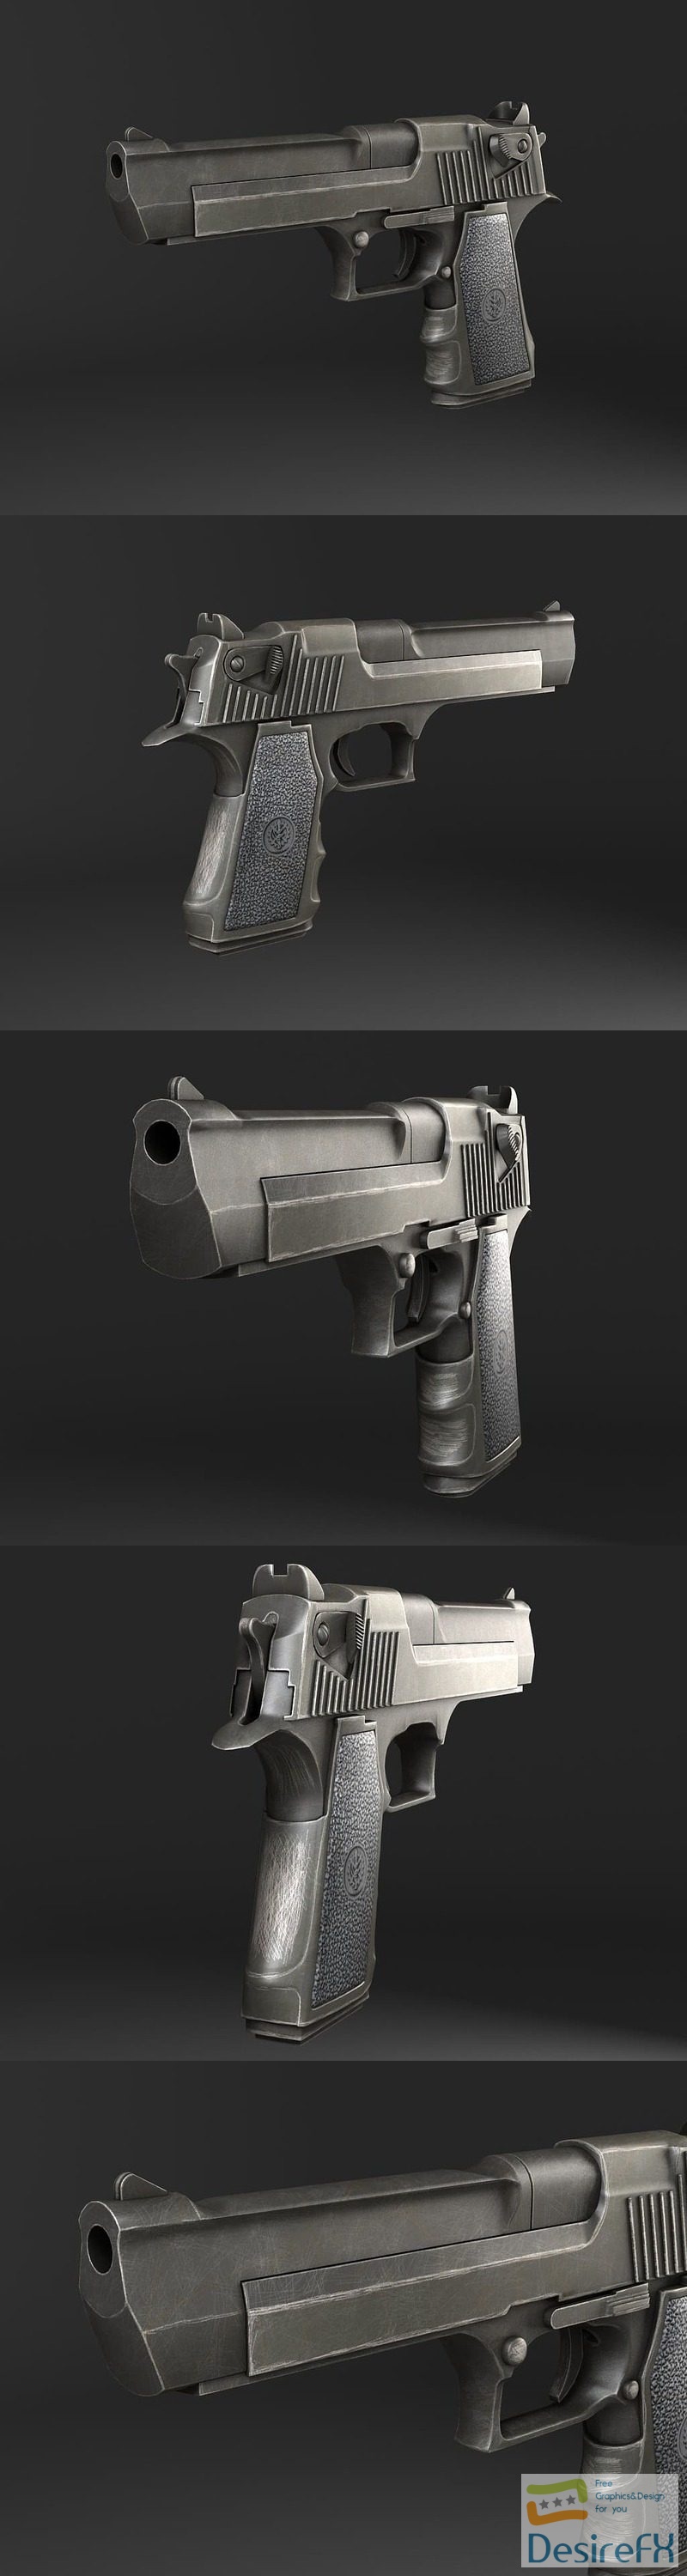 Desert Eagle Pistol 3D Model